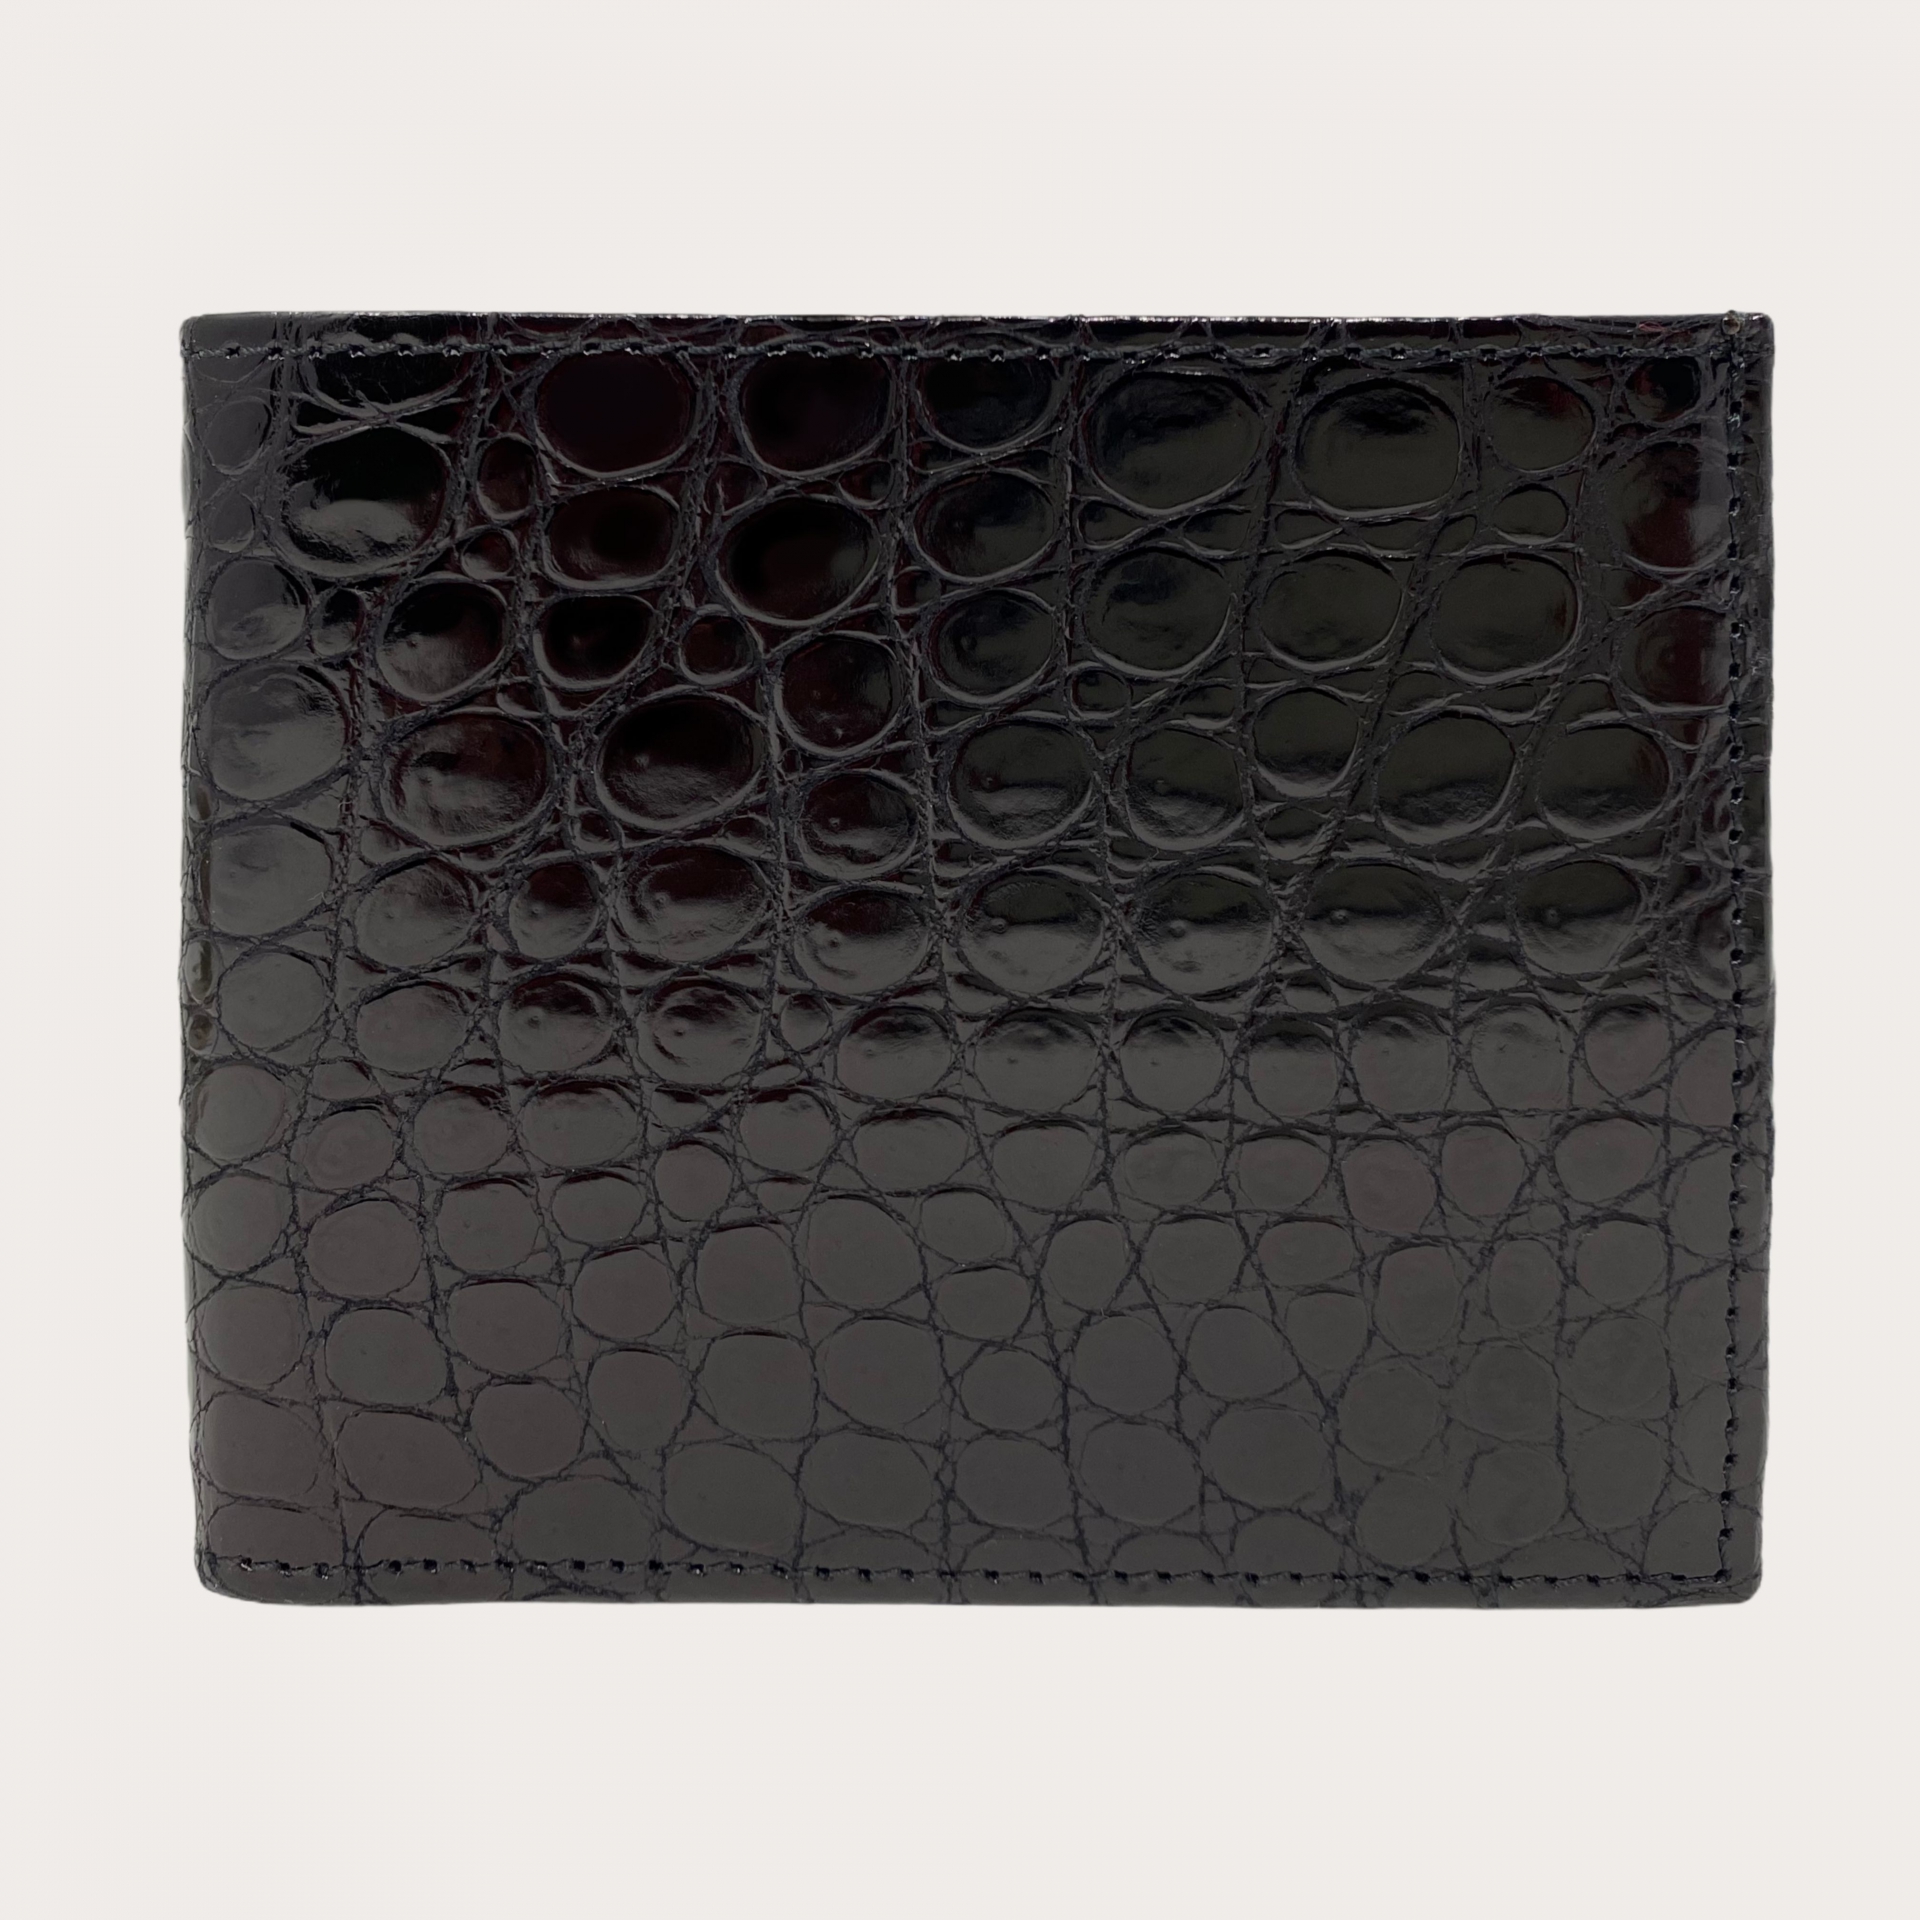 Krokodile kompakte brieftasche, schwarz